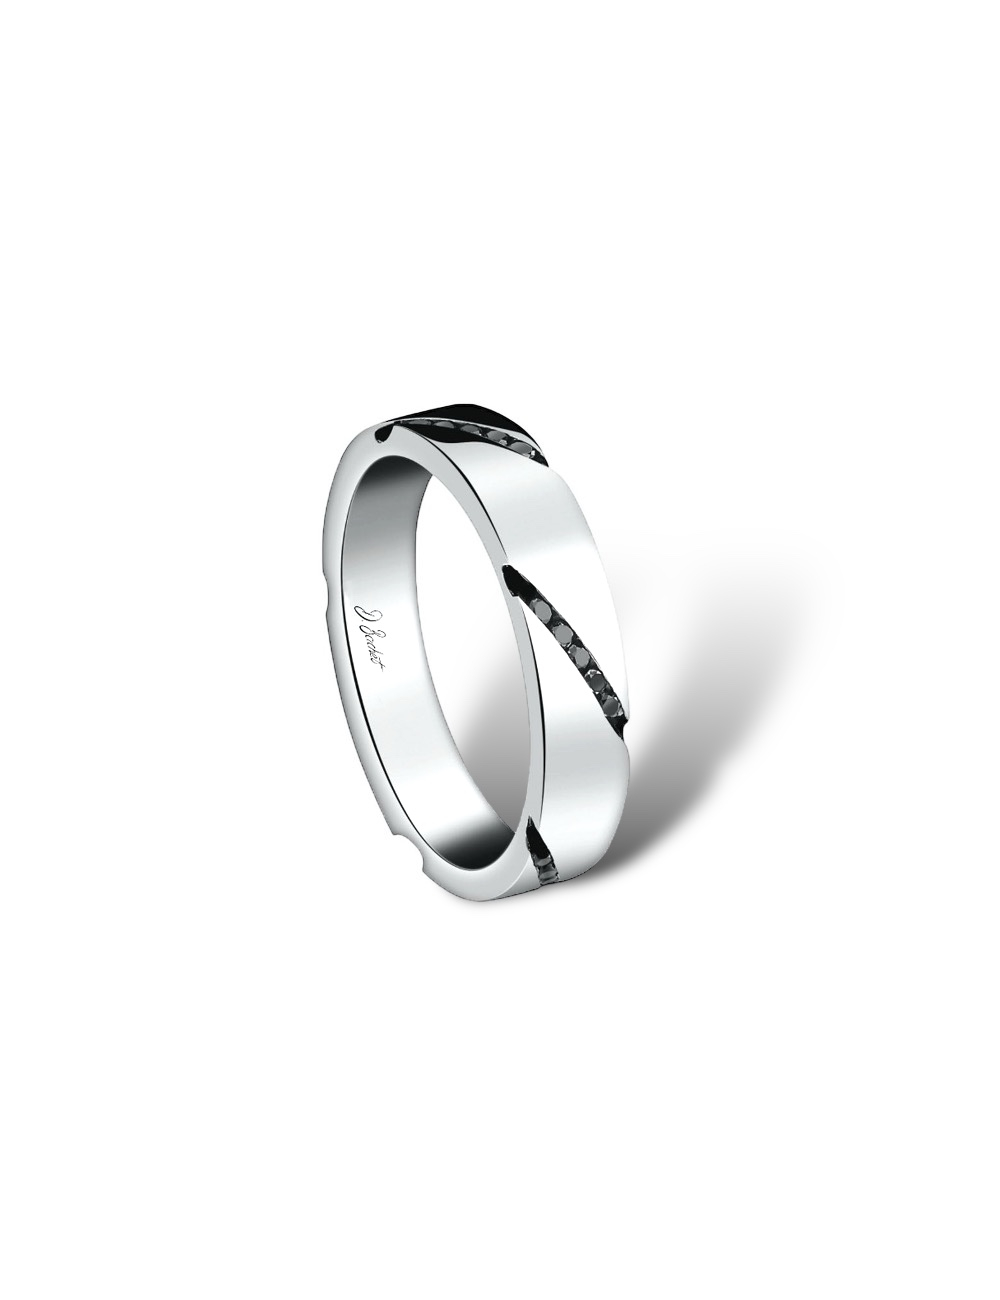 Alliance de mariage ruban en platine pour homme, design moderne, sertie de diamants noirs inclinés.